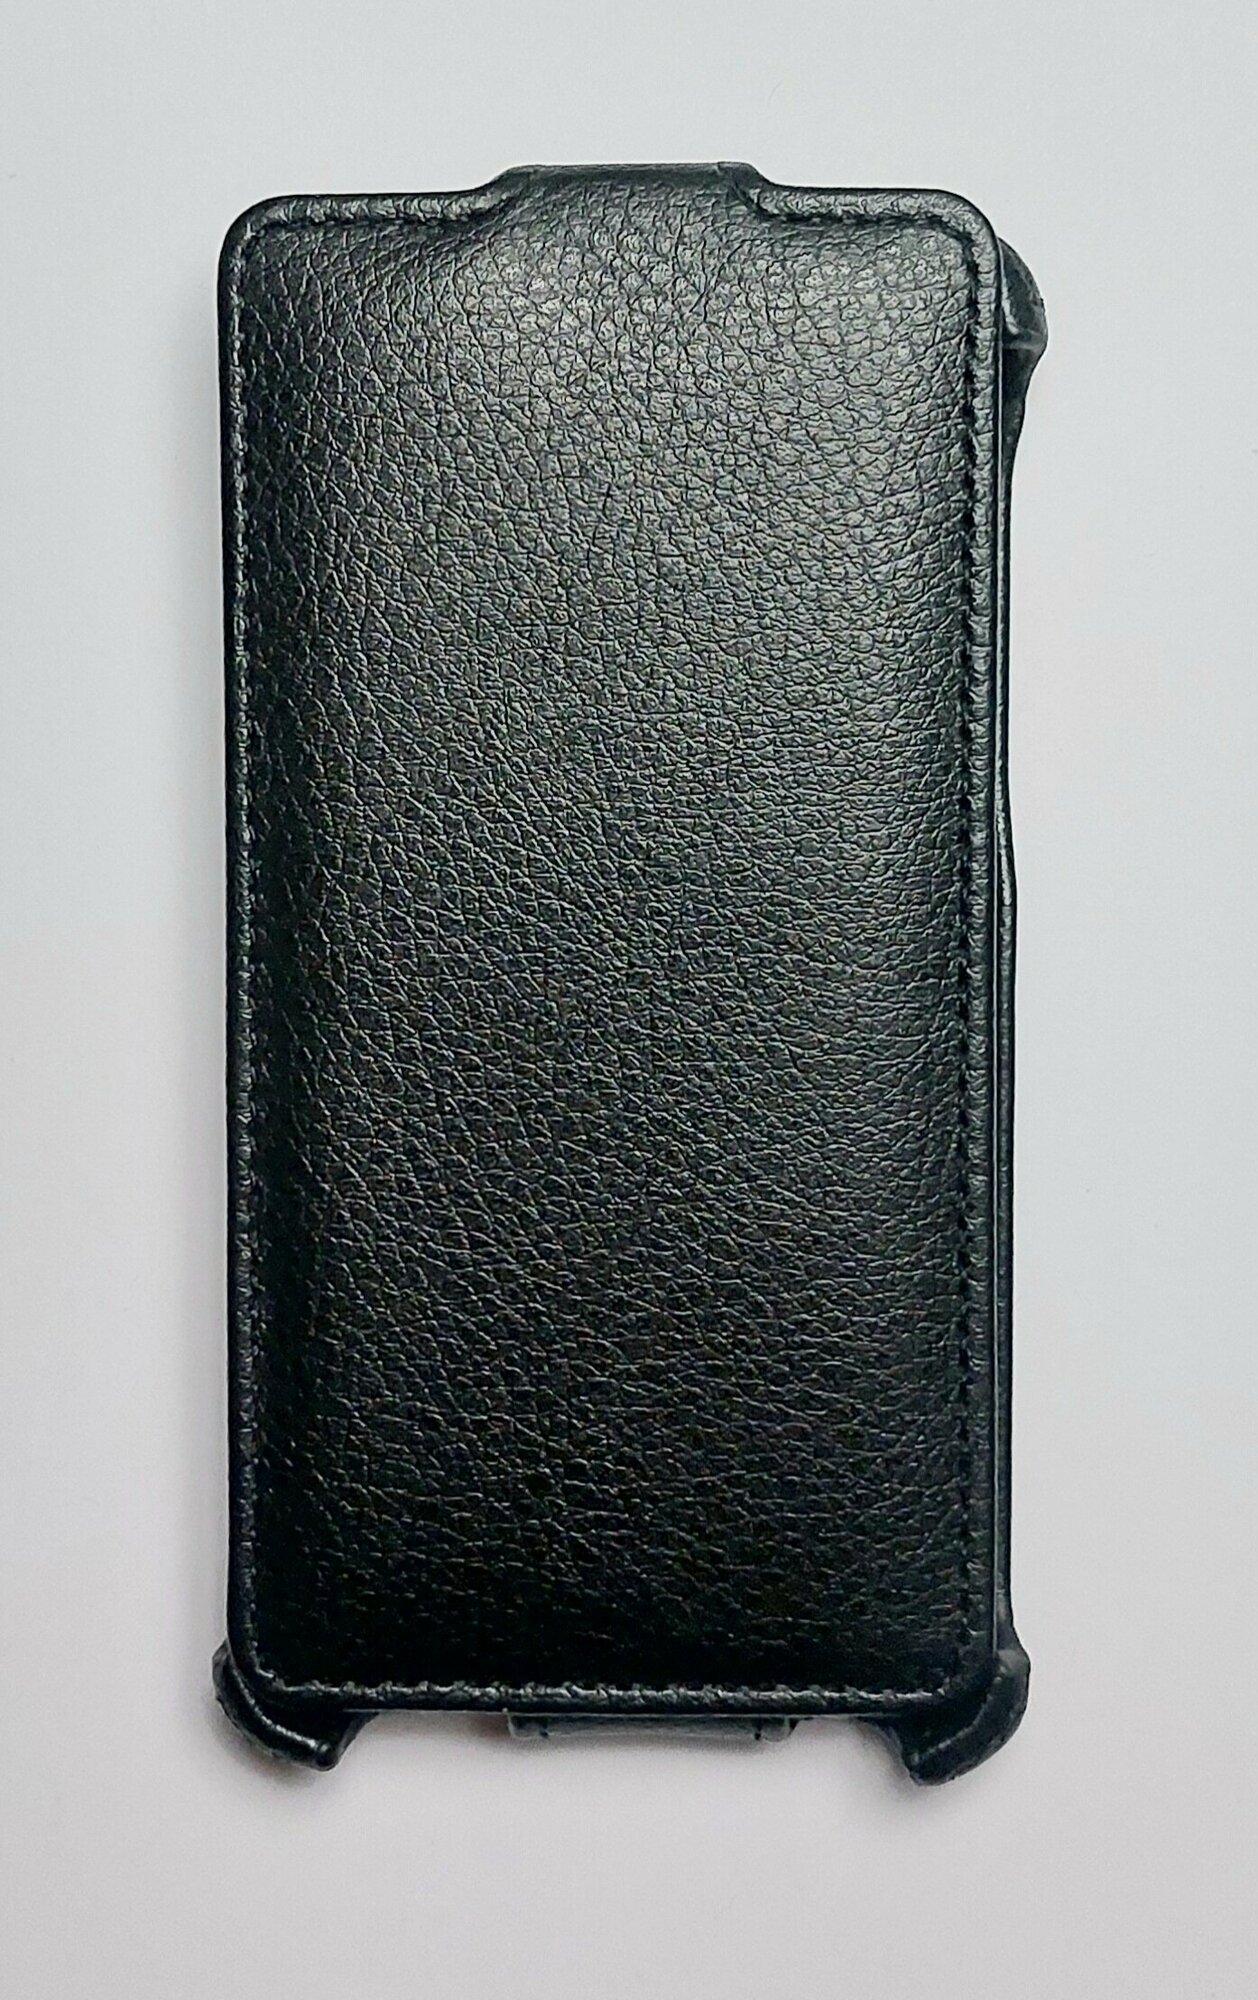 Чехол книжка для Alcatel idol Mini 6012D/6012X чёрный